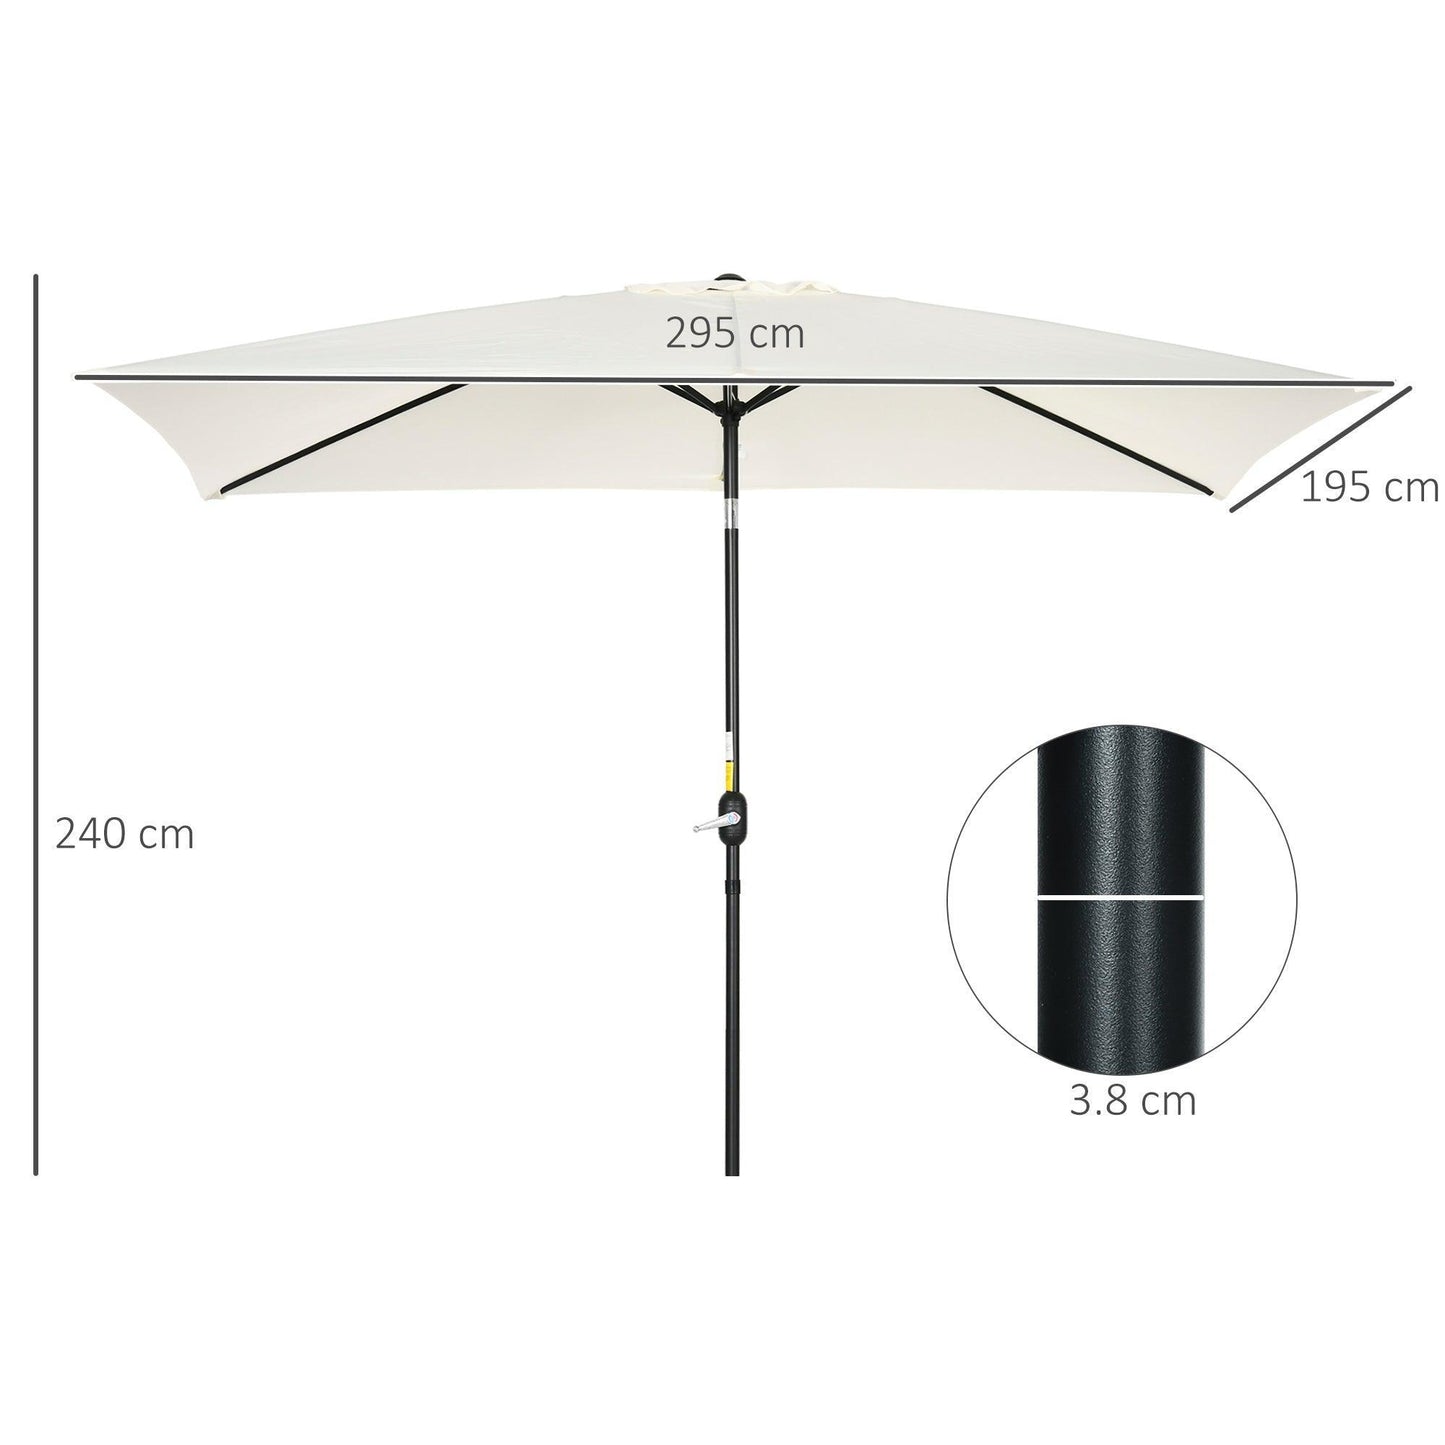 Outsunny Rectangular Garden Umbrella - Cream White - ALL4U RETAILER LTD